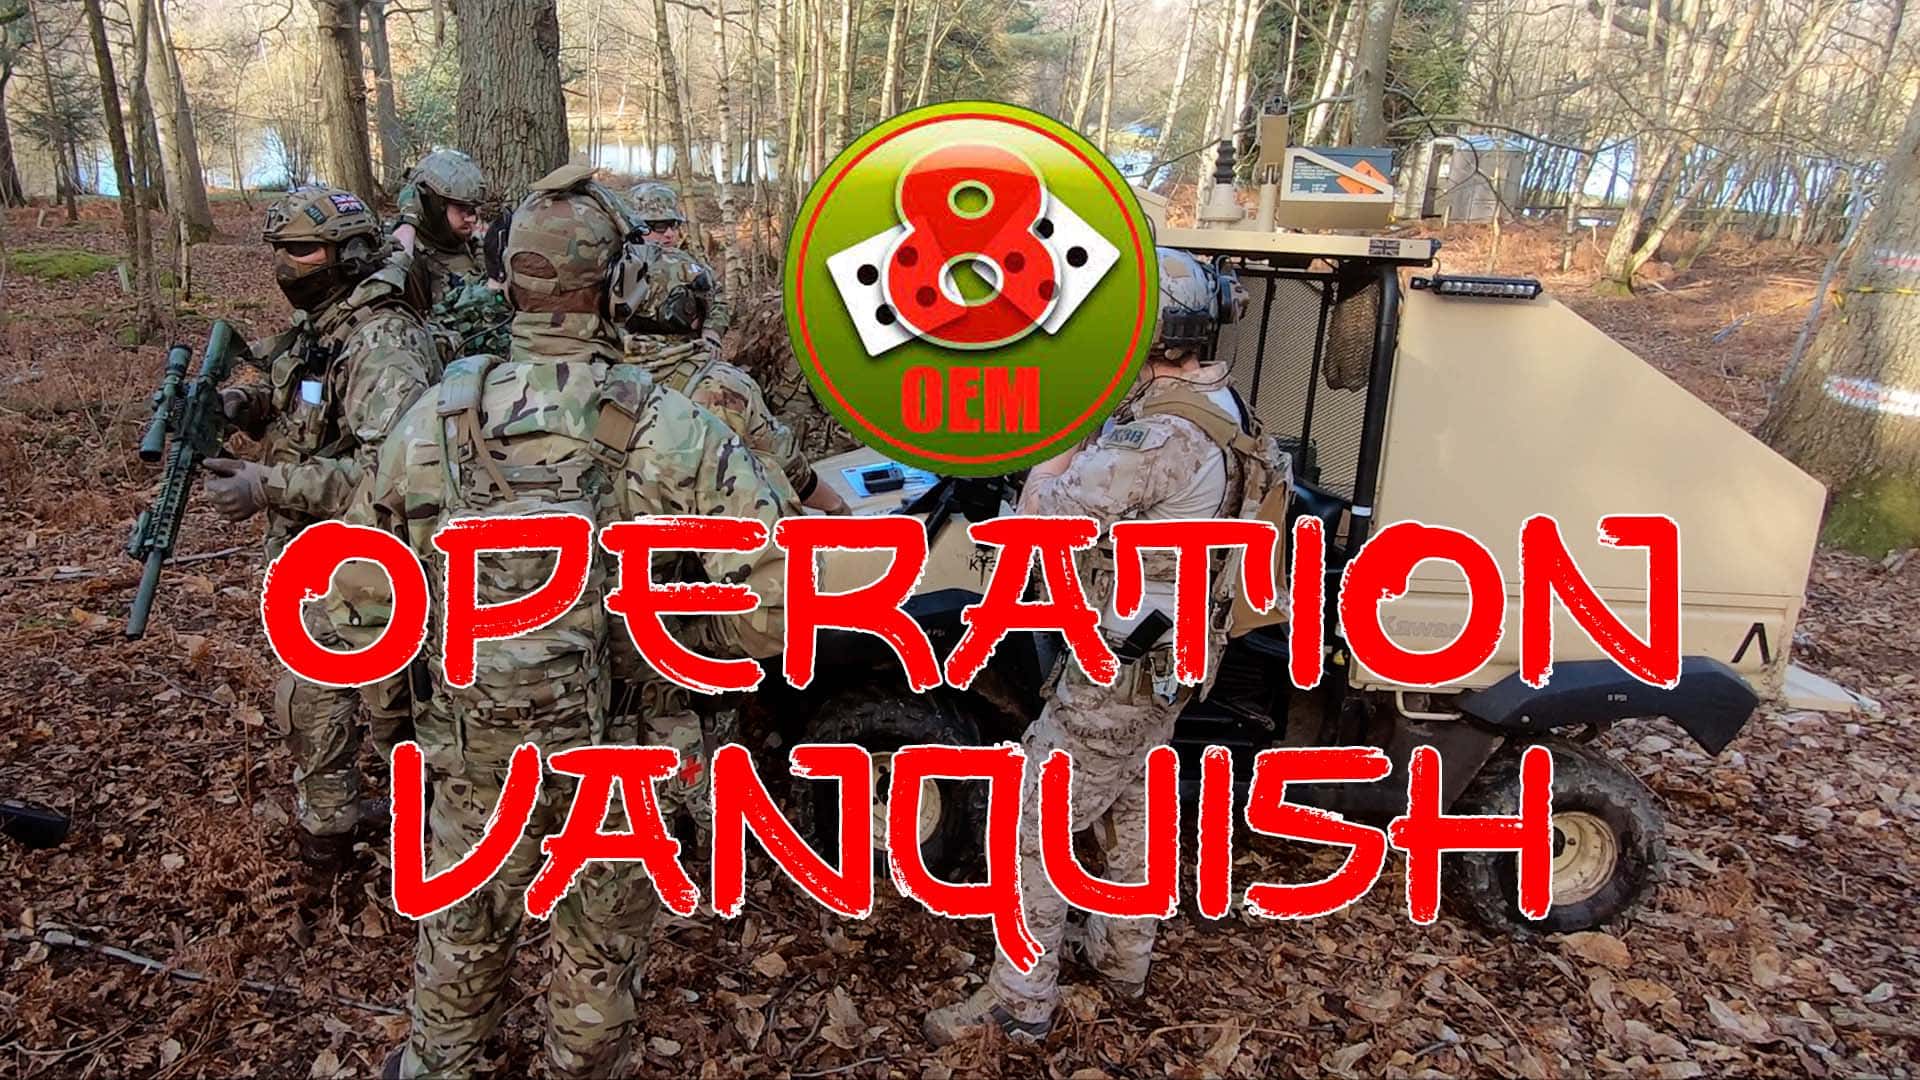 OktoEight - Operation Vanquish 2